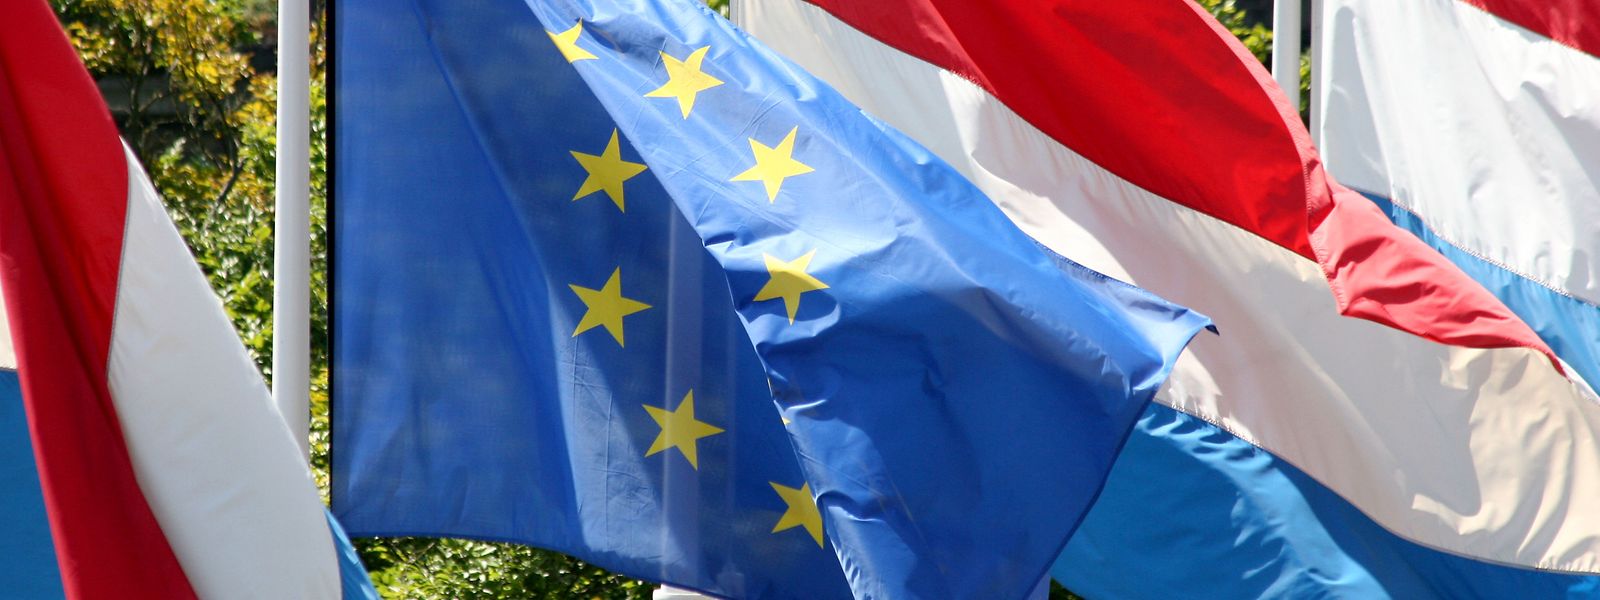 La contribution luxembourgeoise au plan de relance de l'économie européenne prendra notamment la forme de garantie à hauteur de 150 millions d'euros.